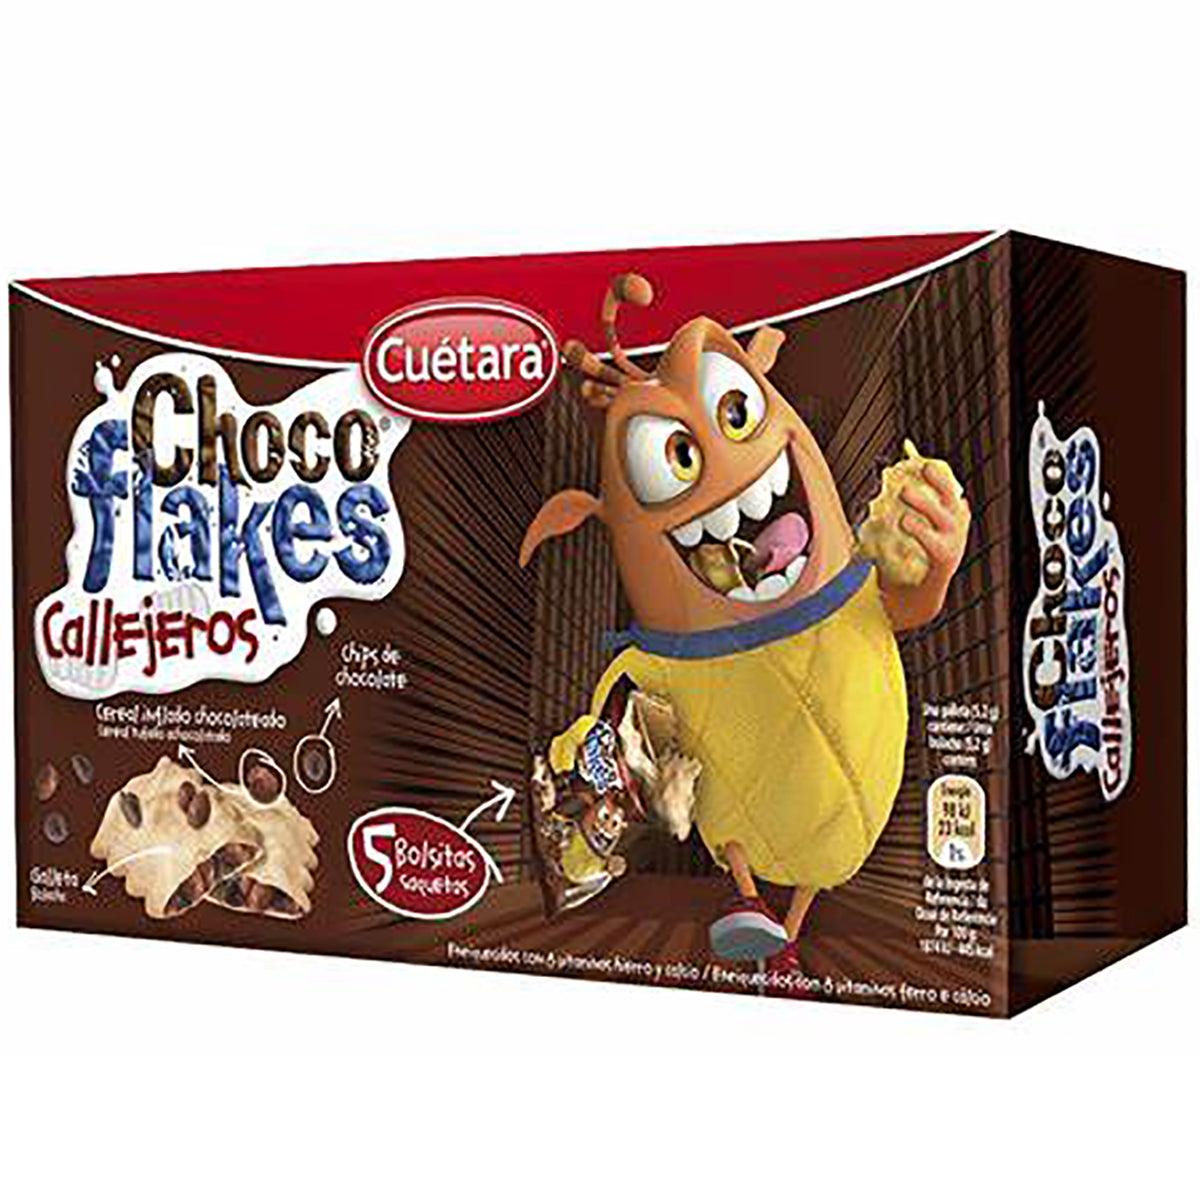 Cuétara Choco Flakes